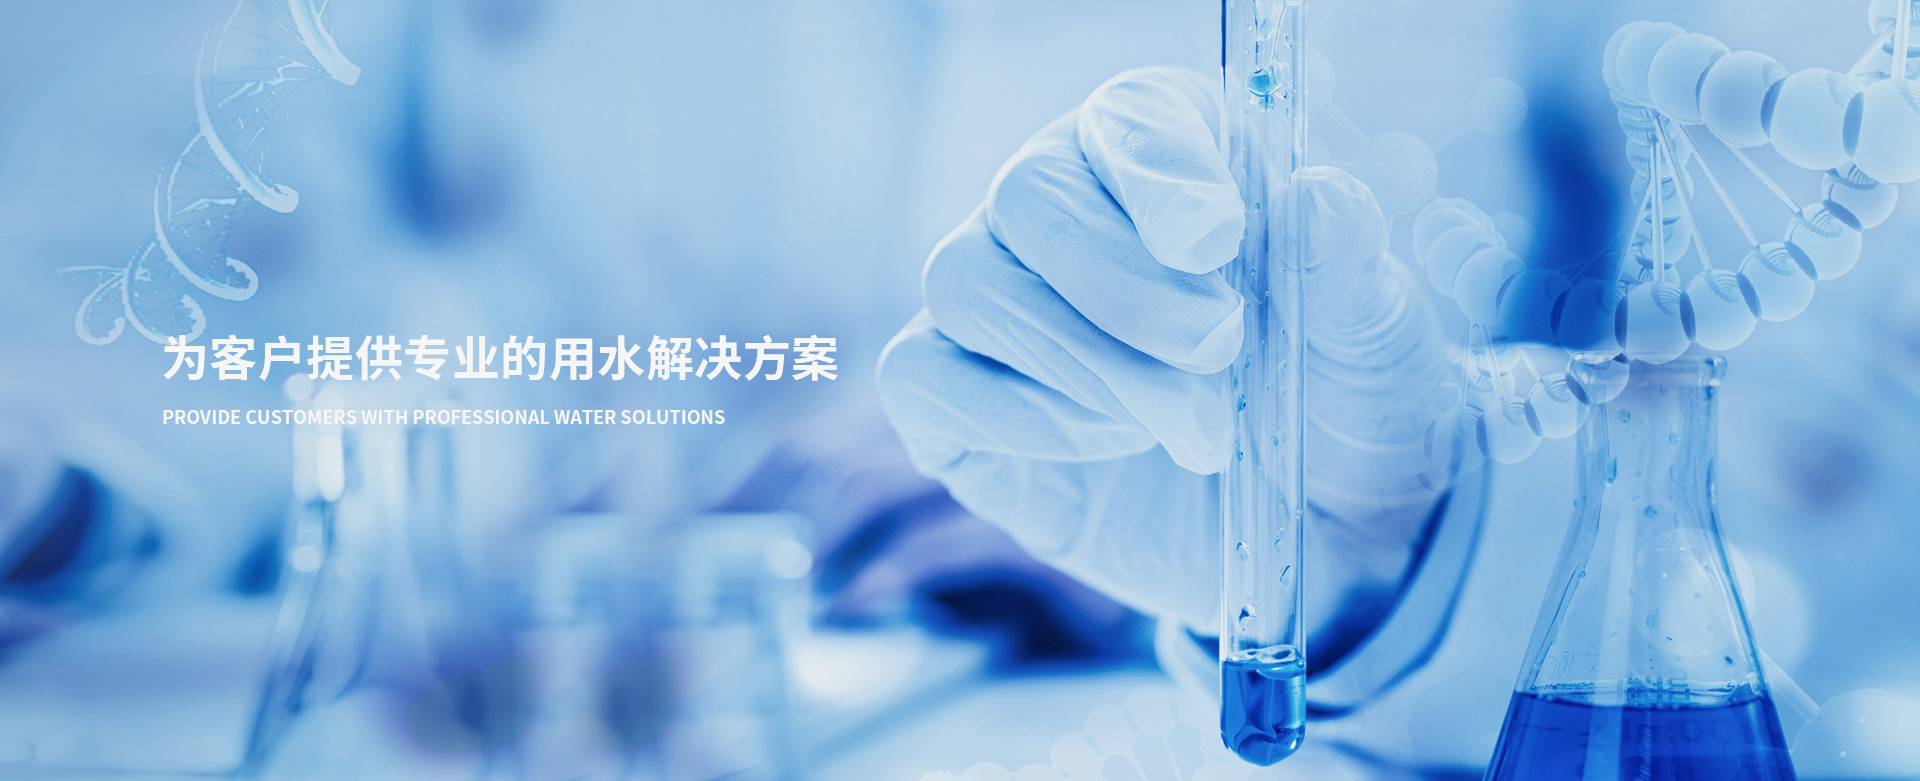 上海水问生物科技有限公司